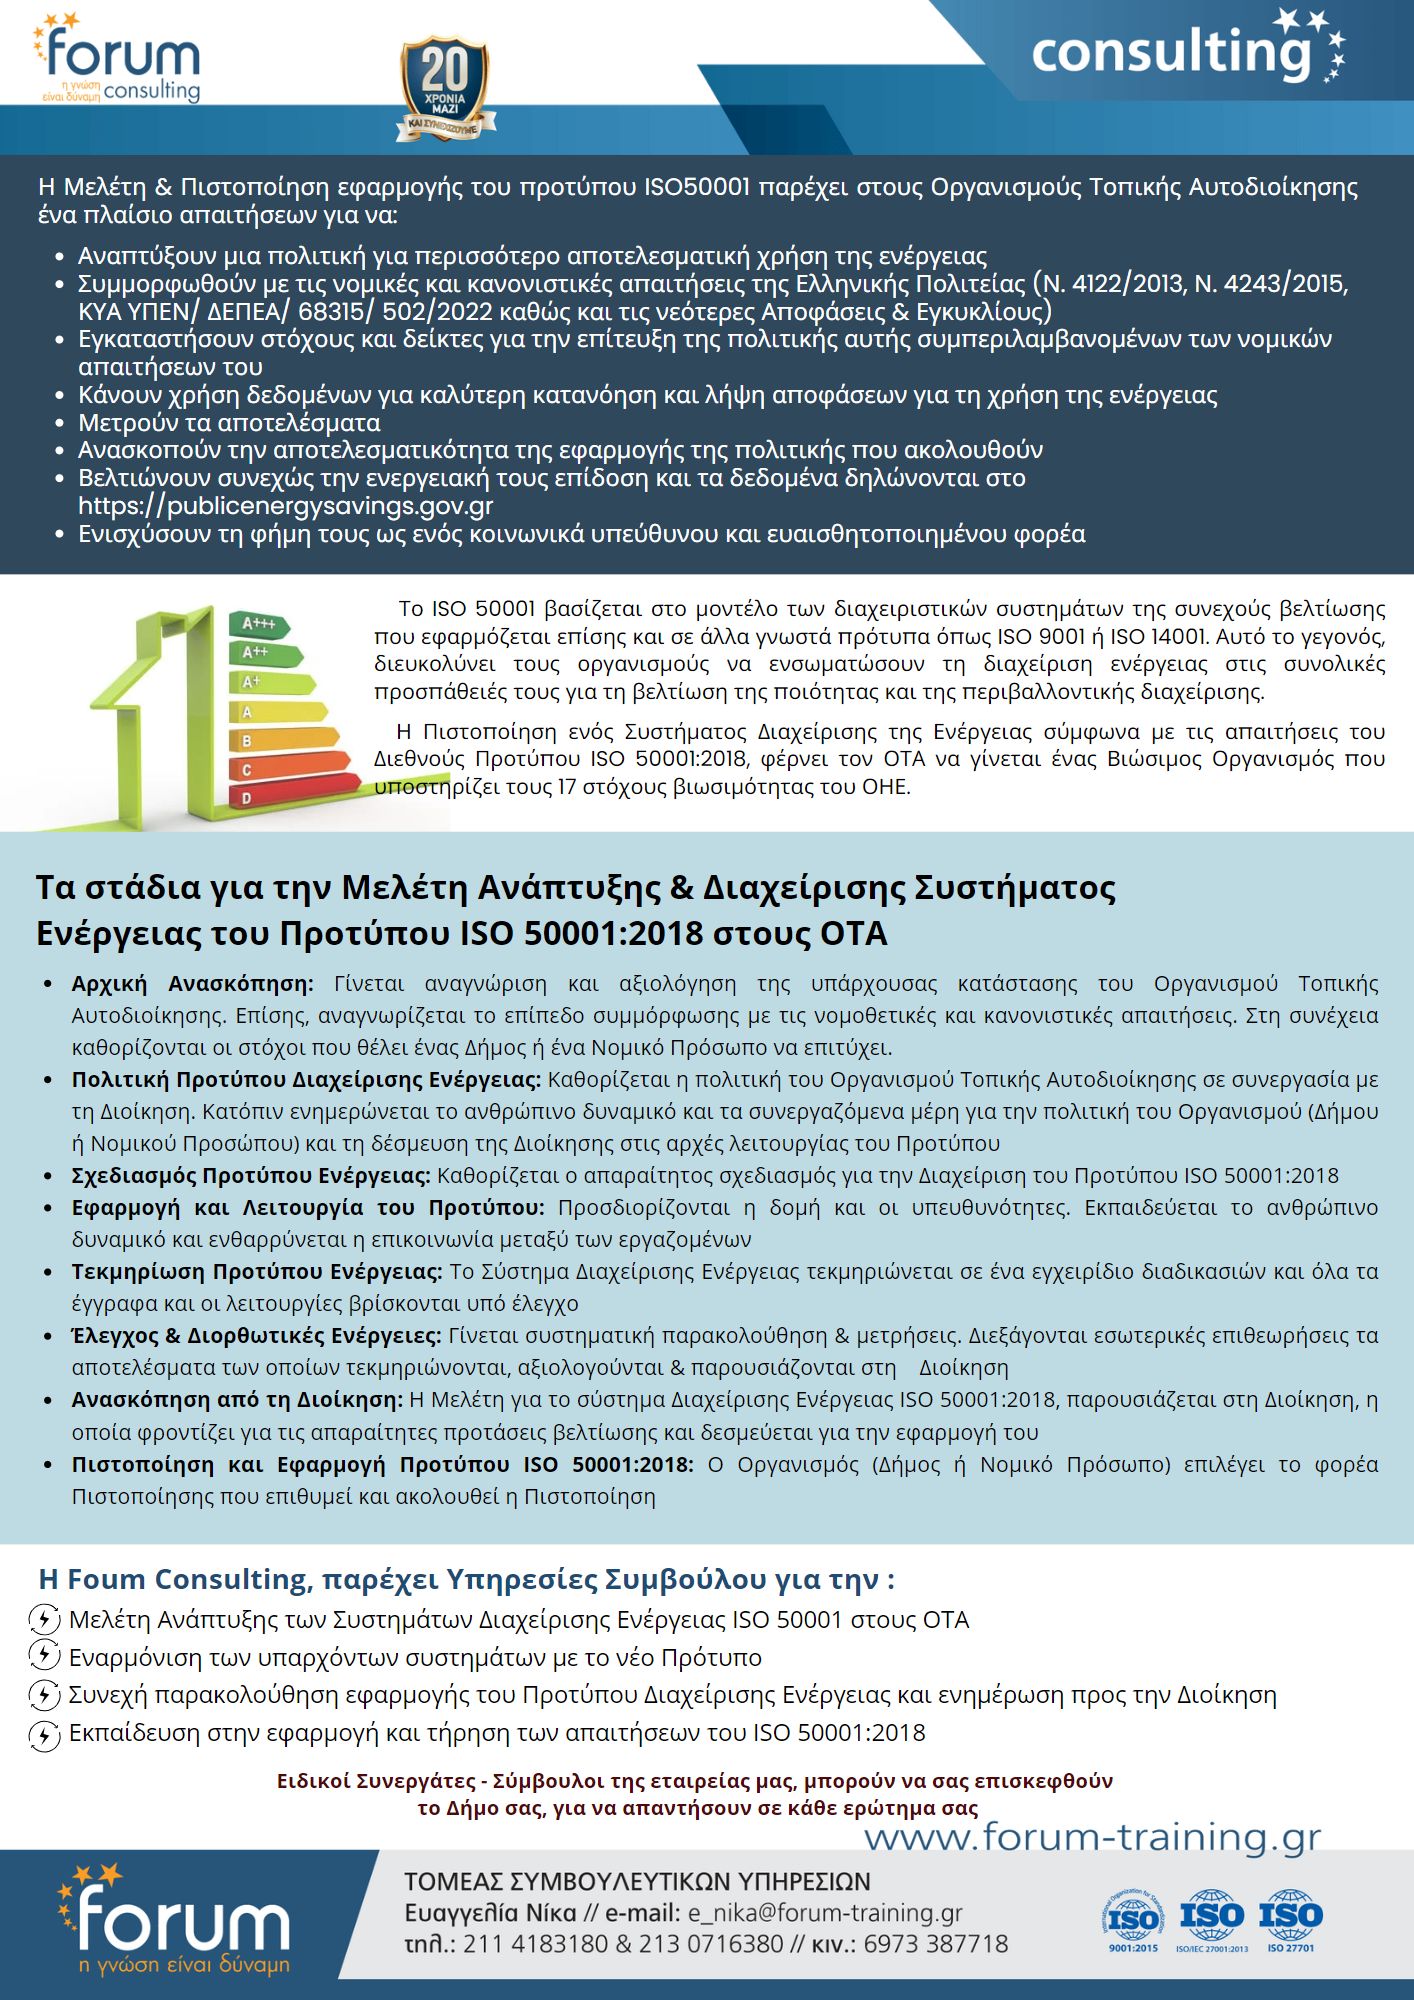 ΠΡΟΤΑΣΗ ISO 50001 2018 ΟΤΑ CL2